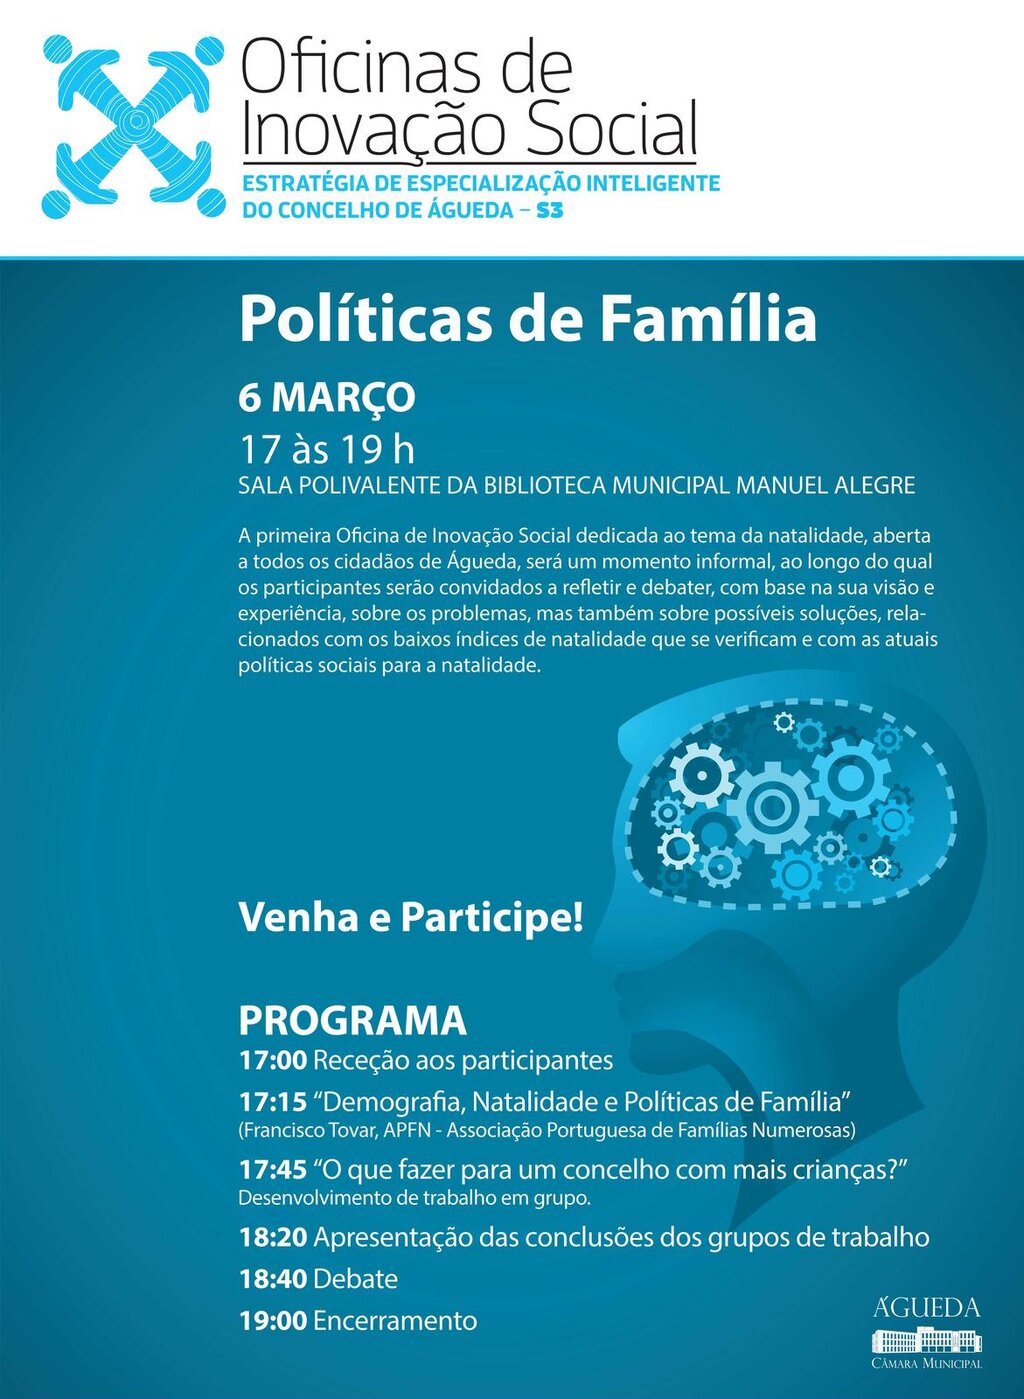 Oficina de Inovação Social  -  “Políticas de Família”.